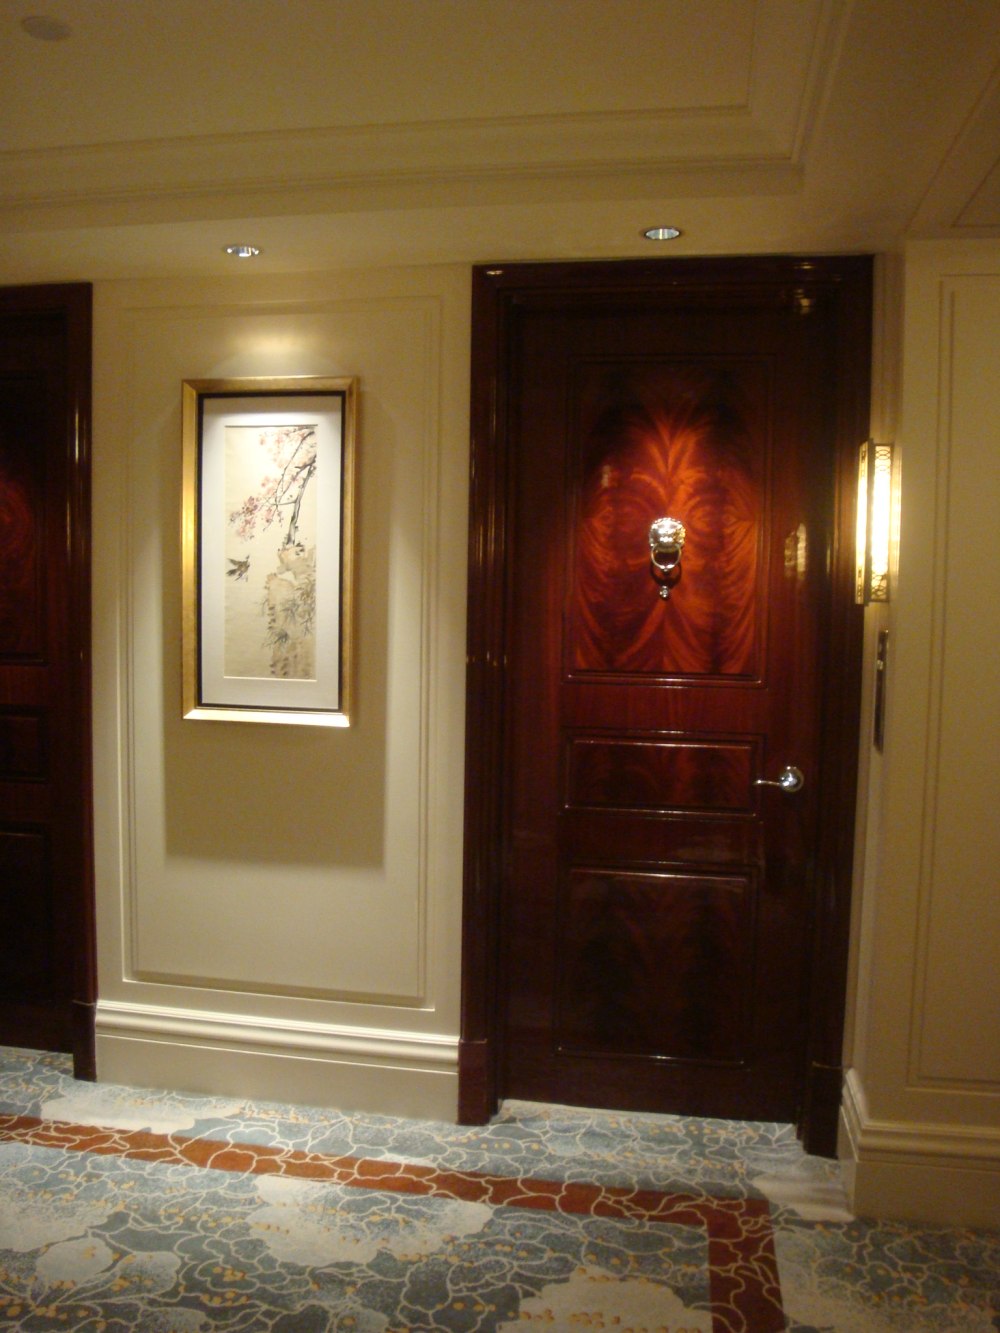 上海华尔道夫酒店(The Waldorf Astoria OnTheBund)(HBA)10.9第10页更新_DSC08270.JPG